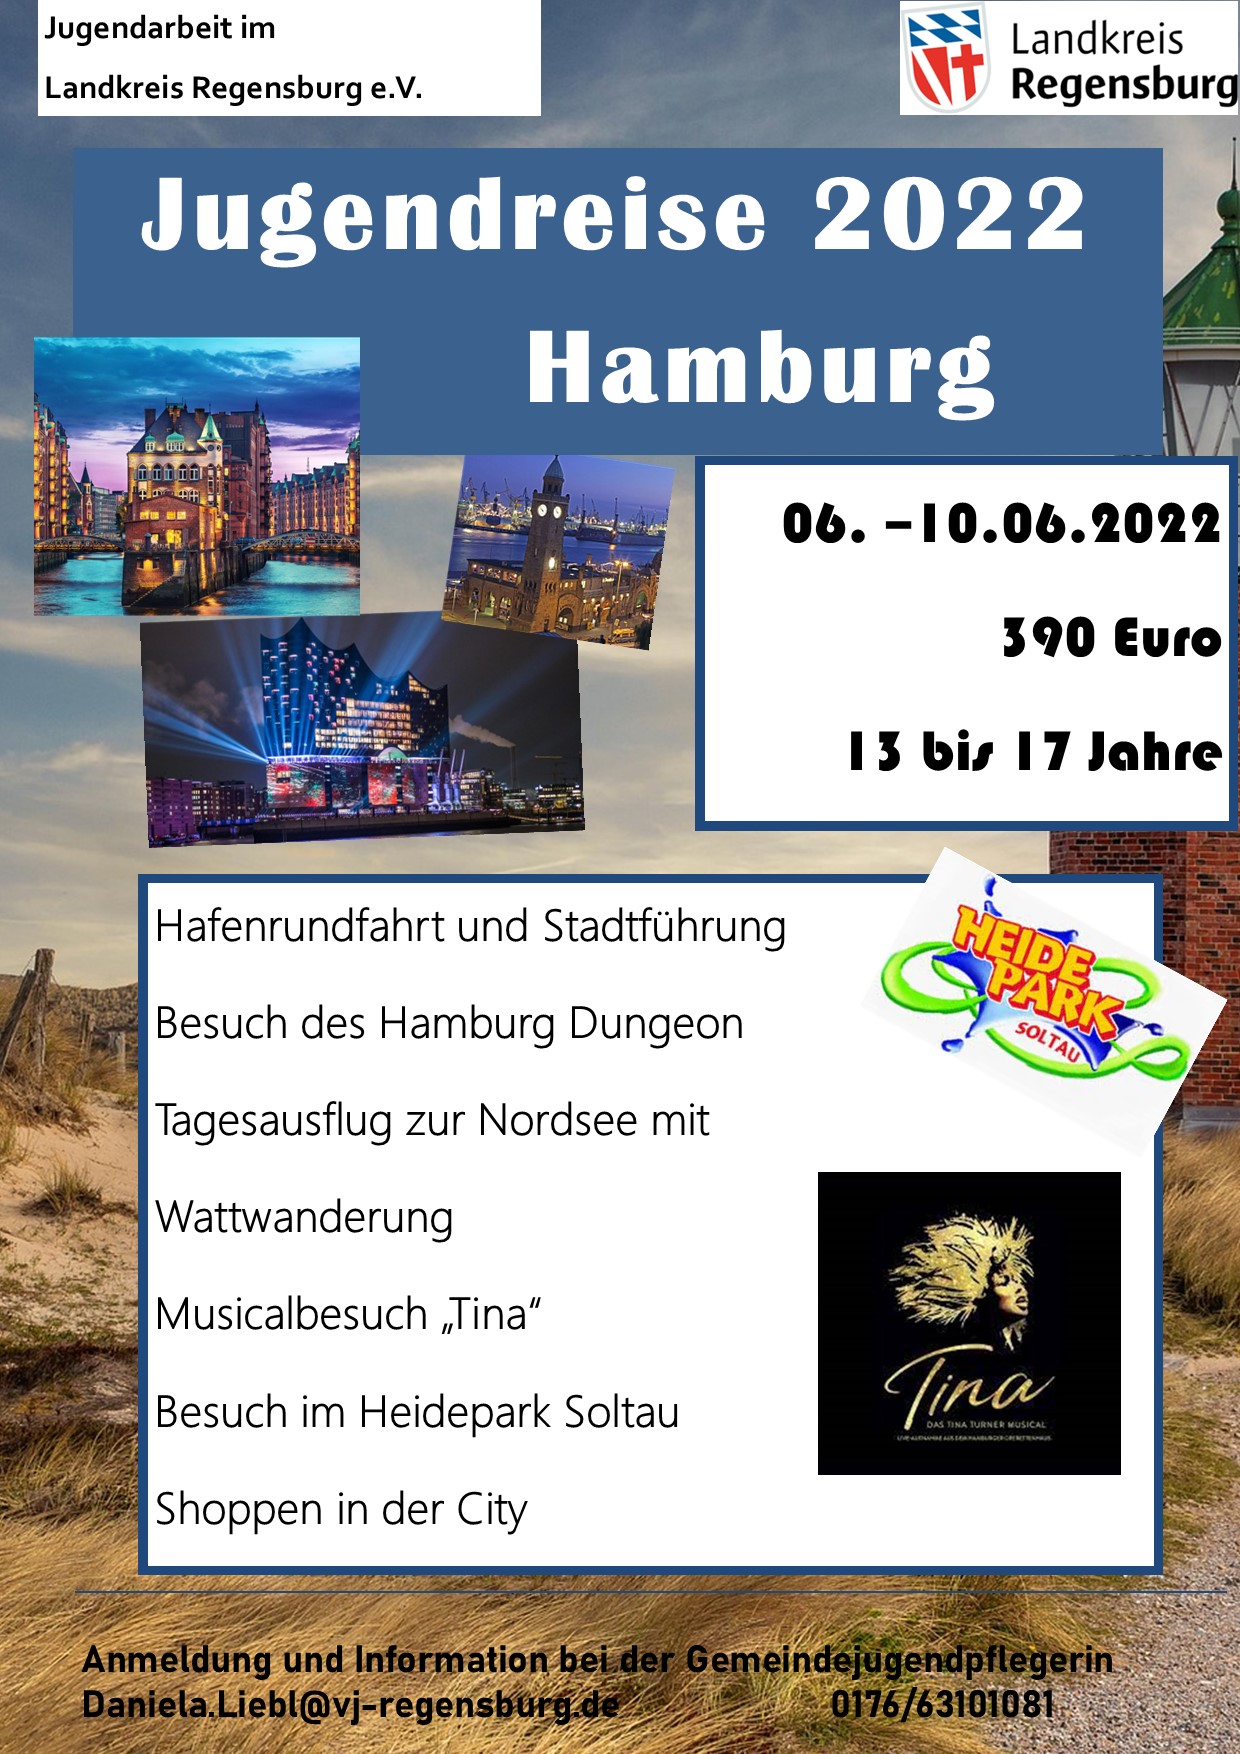 Jugendreise 2022 nach Hamburg